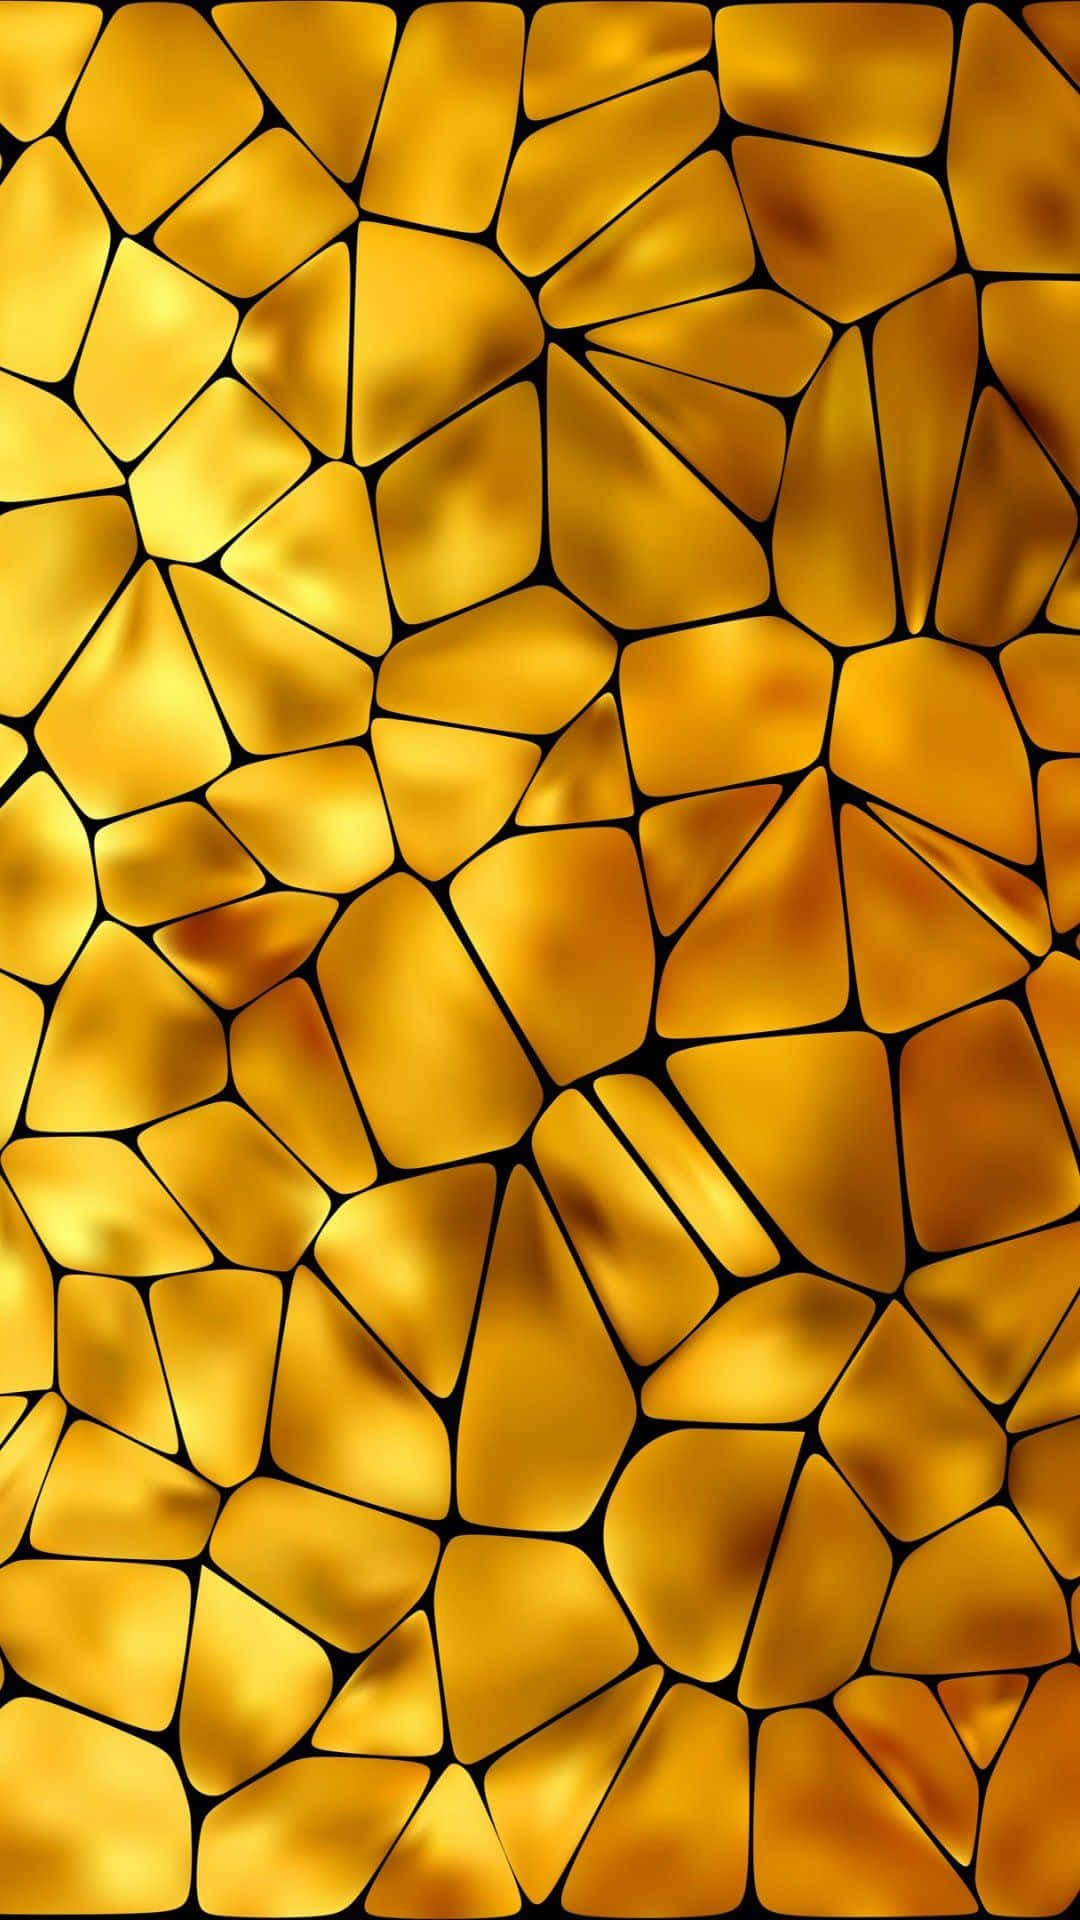 A Golden Glass Mosaic Background Wallpaper